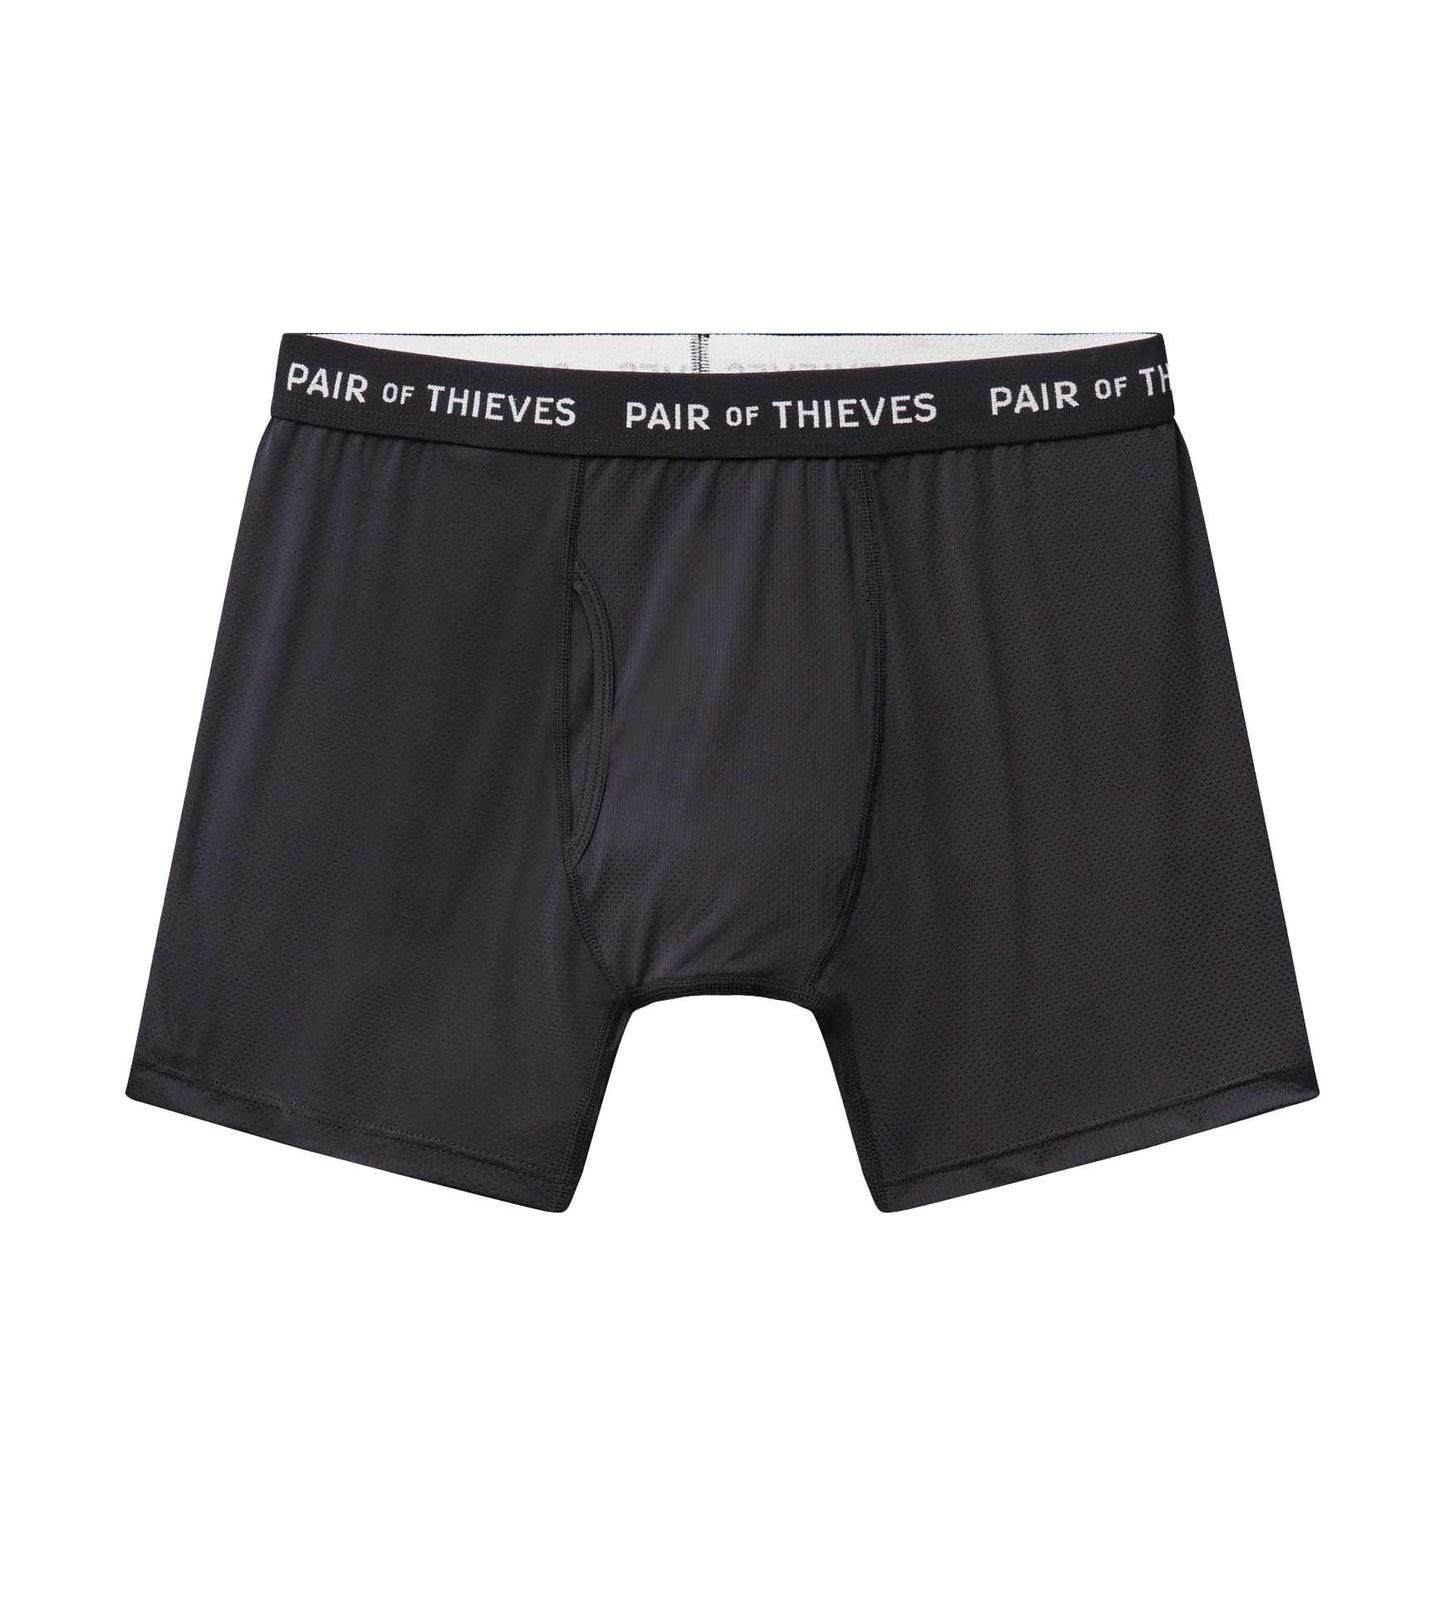 Pair of Thieves Men's Super Soft Boxer Briefs - Black/Grid S